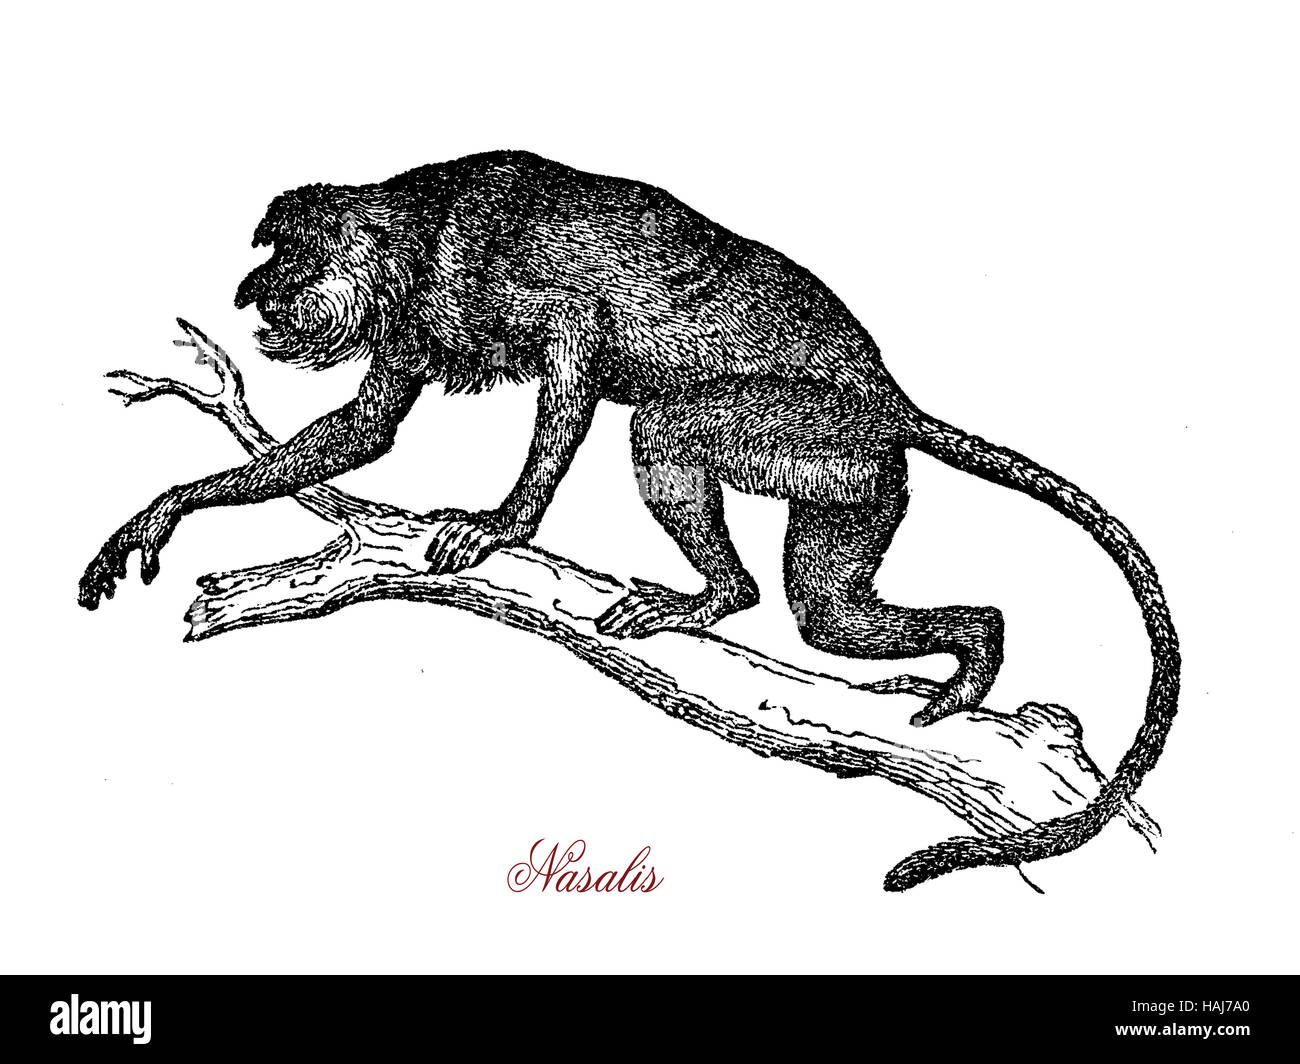 Proboscis Monkey ou singe bec long est originaire de l'île de Bornéo, a un grand nez et un ventre de pot, généralement vit en groupe avec hiérarchie de dominance entre les femmes. Banque D'Images